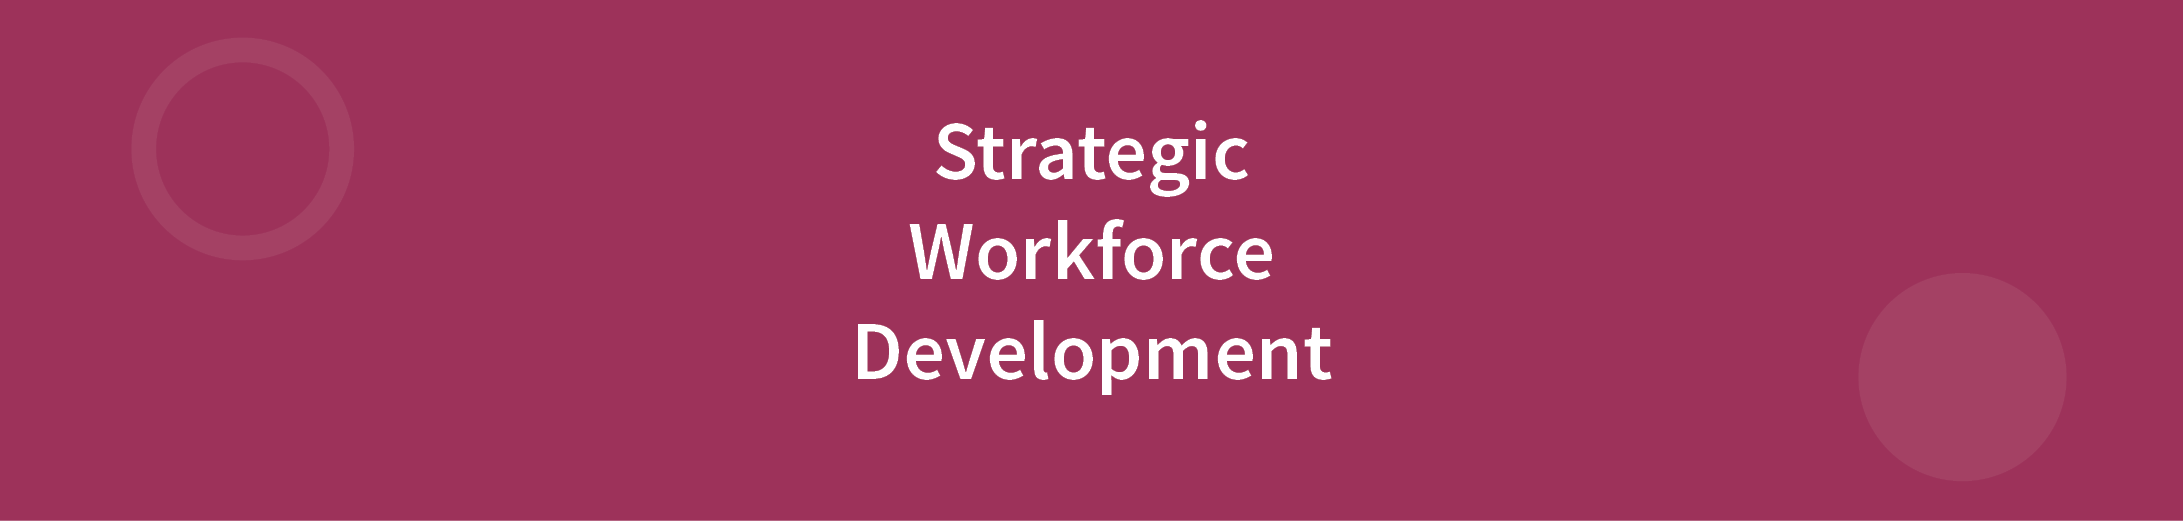 Strategic Workforce Development written in white text on purple background